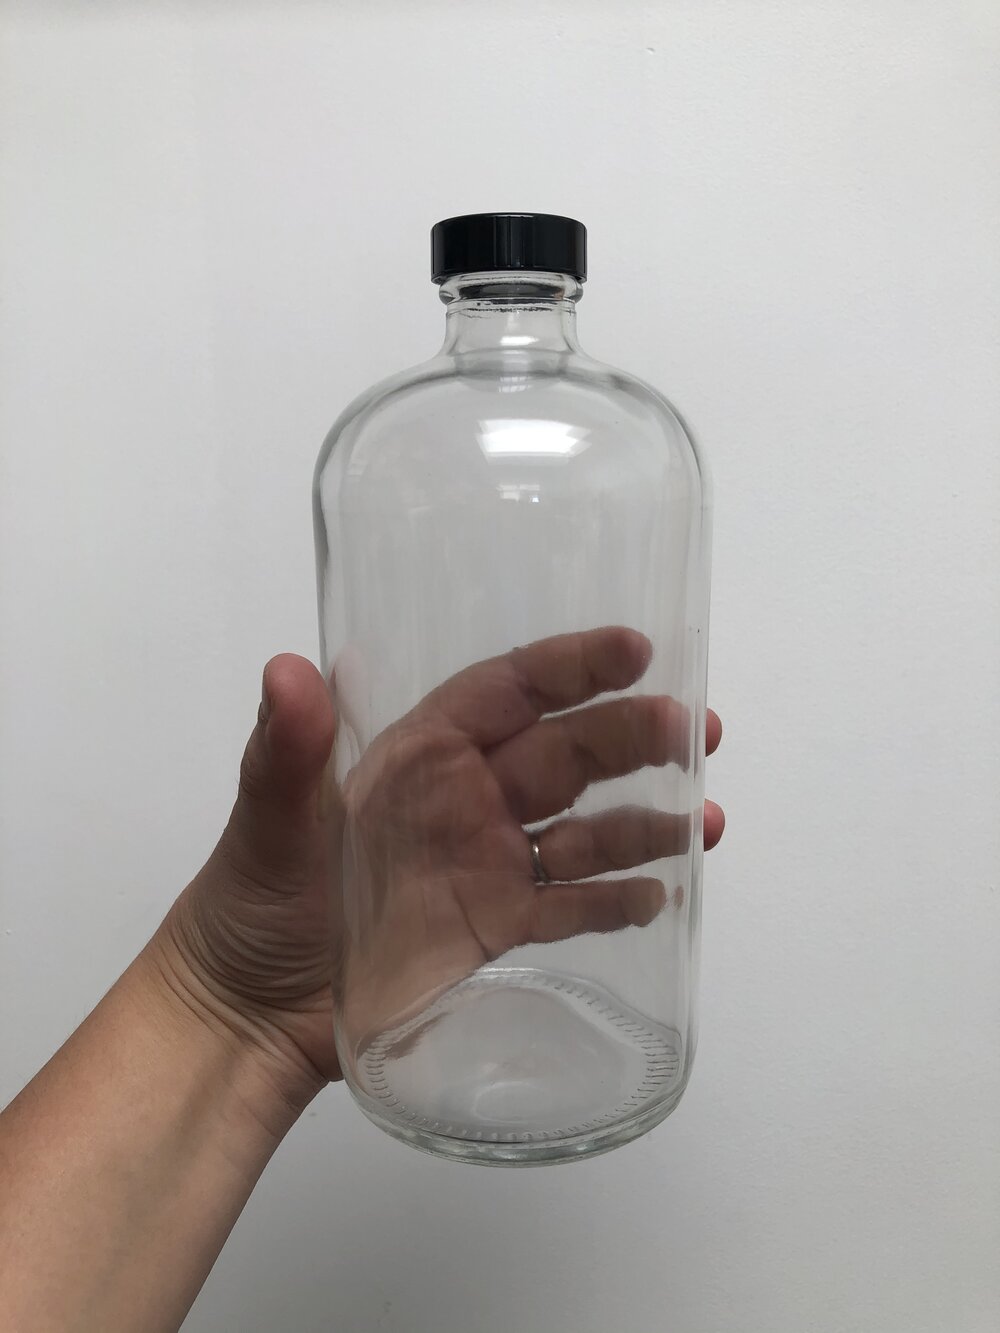 1 Litre Glass Bottle 